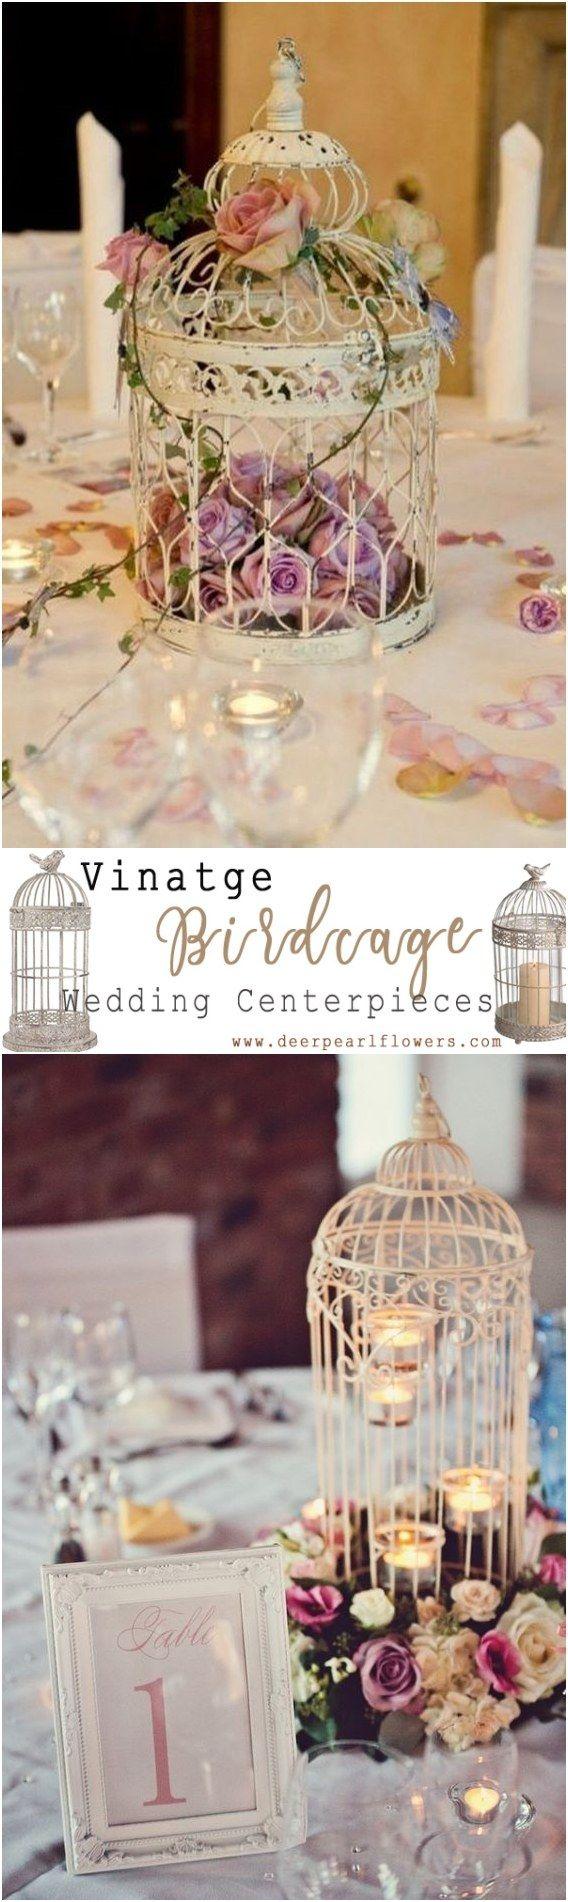 Hochzeit - Top 20 Vintage Birdcage Wedding Centerpieces For 2018